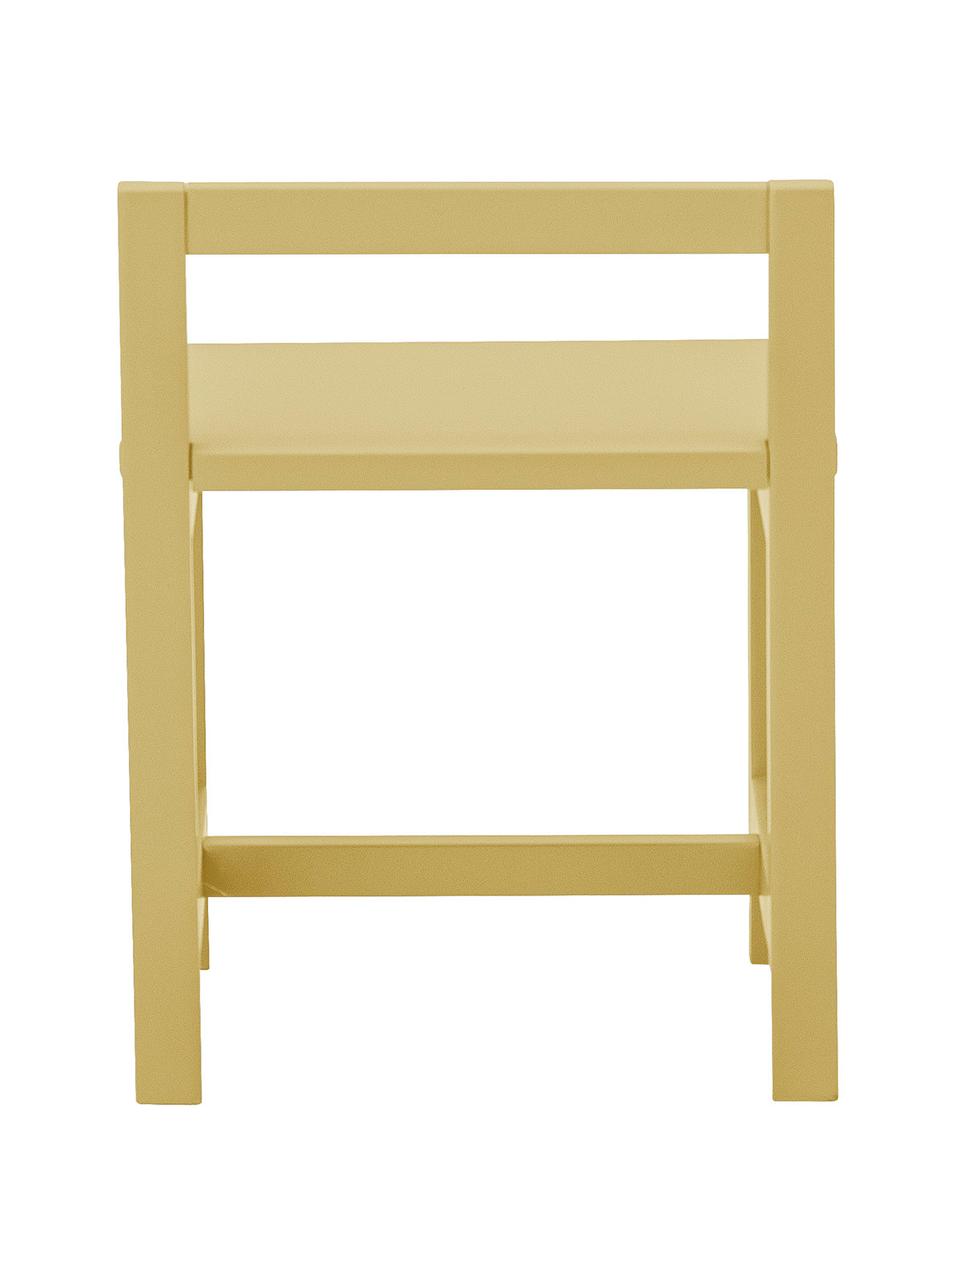 Krzesełko dziecięce Rese, Płyta pilśniowa średniej gęstości (MDF), drewno kauczukowe, Żółty, S 32 x G 28 cm